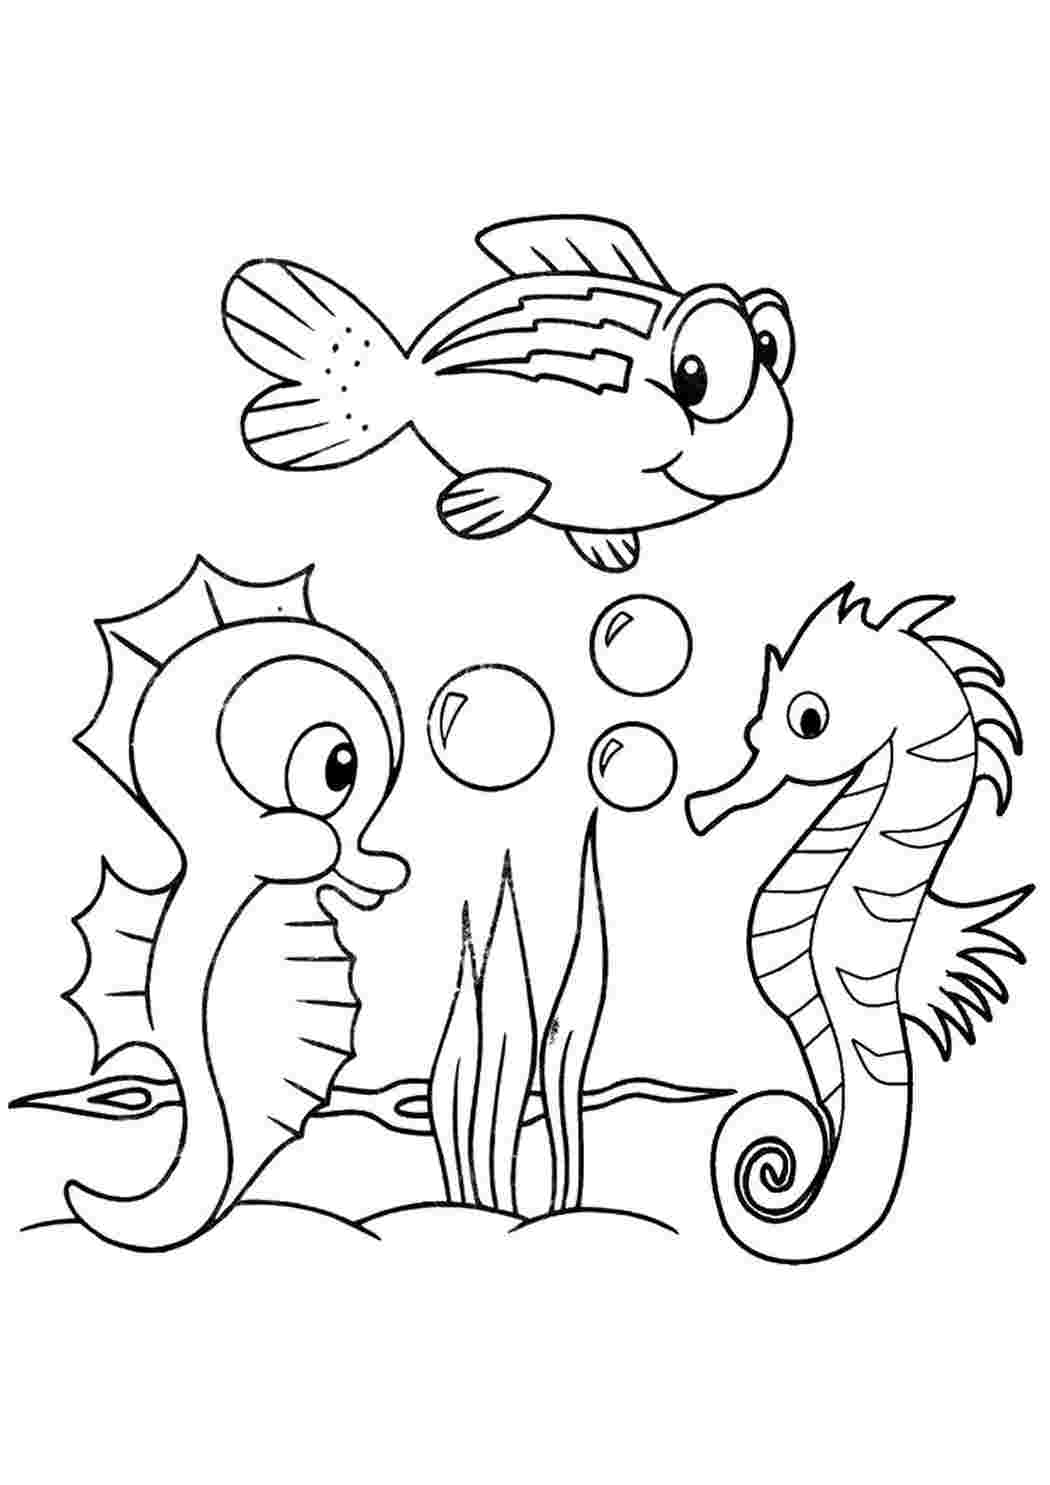 Морской конек раскраска для малышей